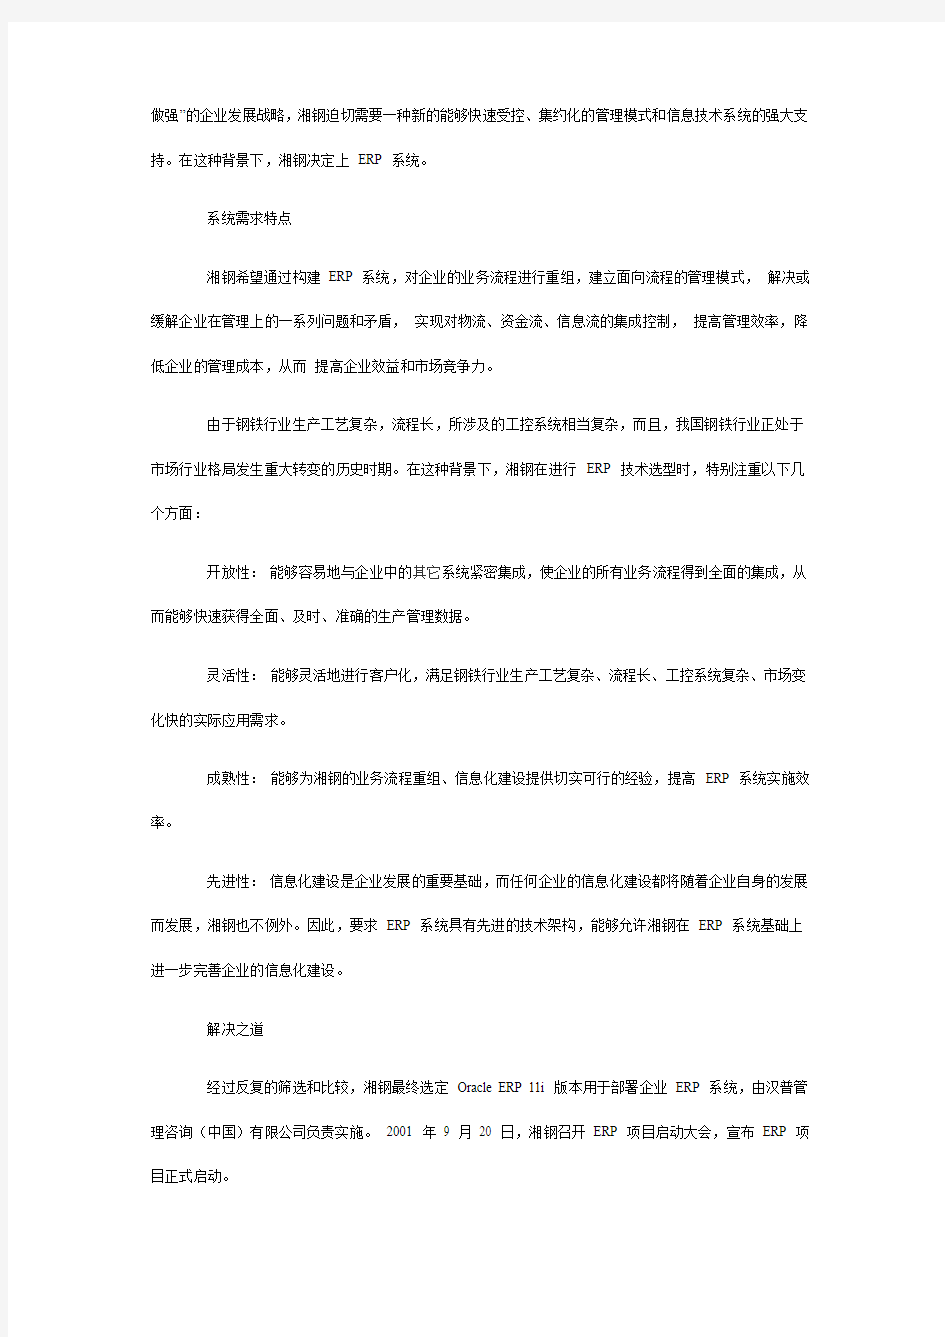 ERP系统湘潭钢铁应用案例